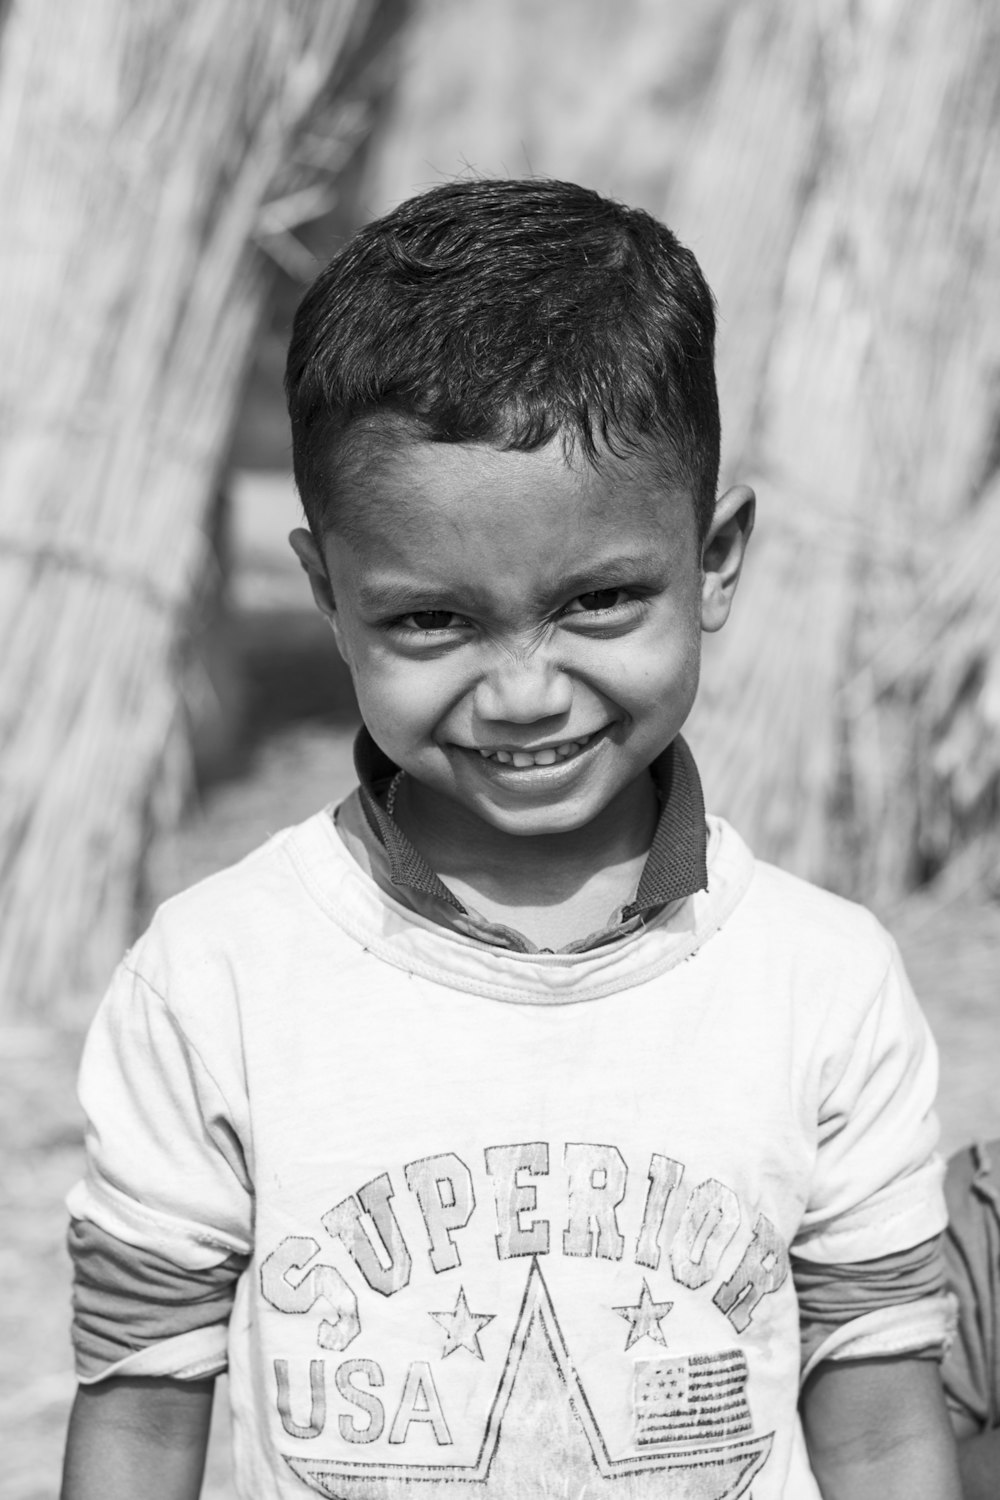 Un ragazzino che sorride per la macchina fotografica